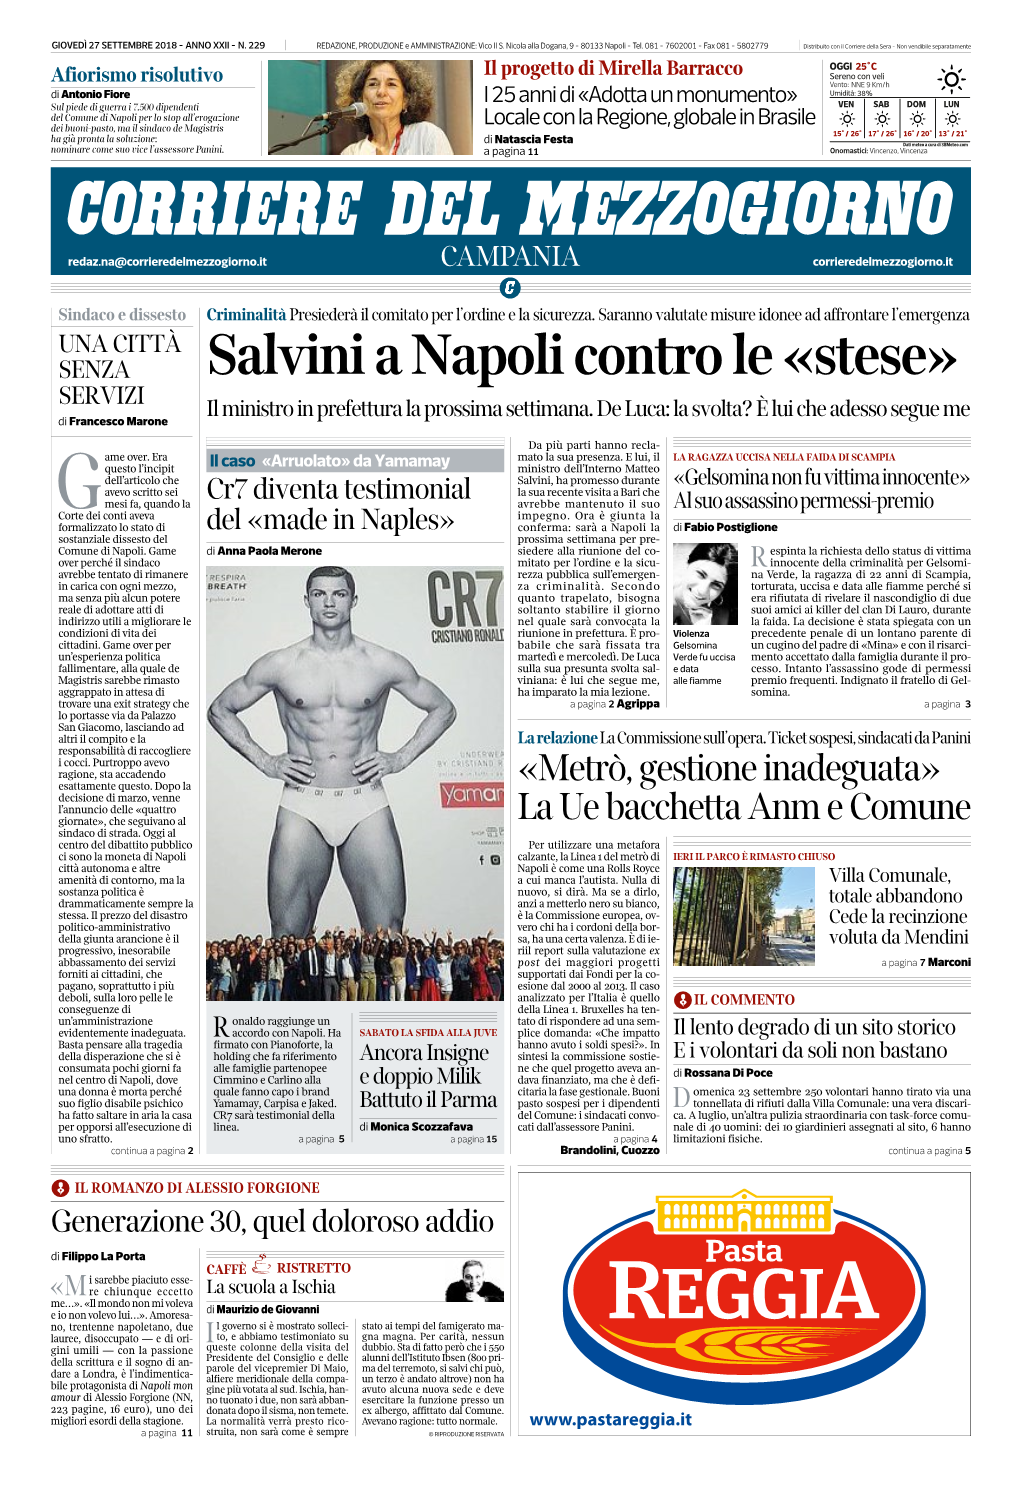 Salvini a Napoli Contro Le